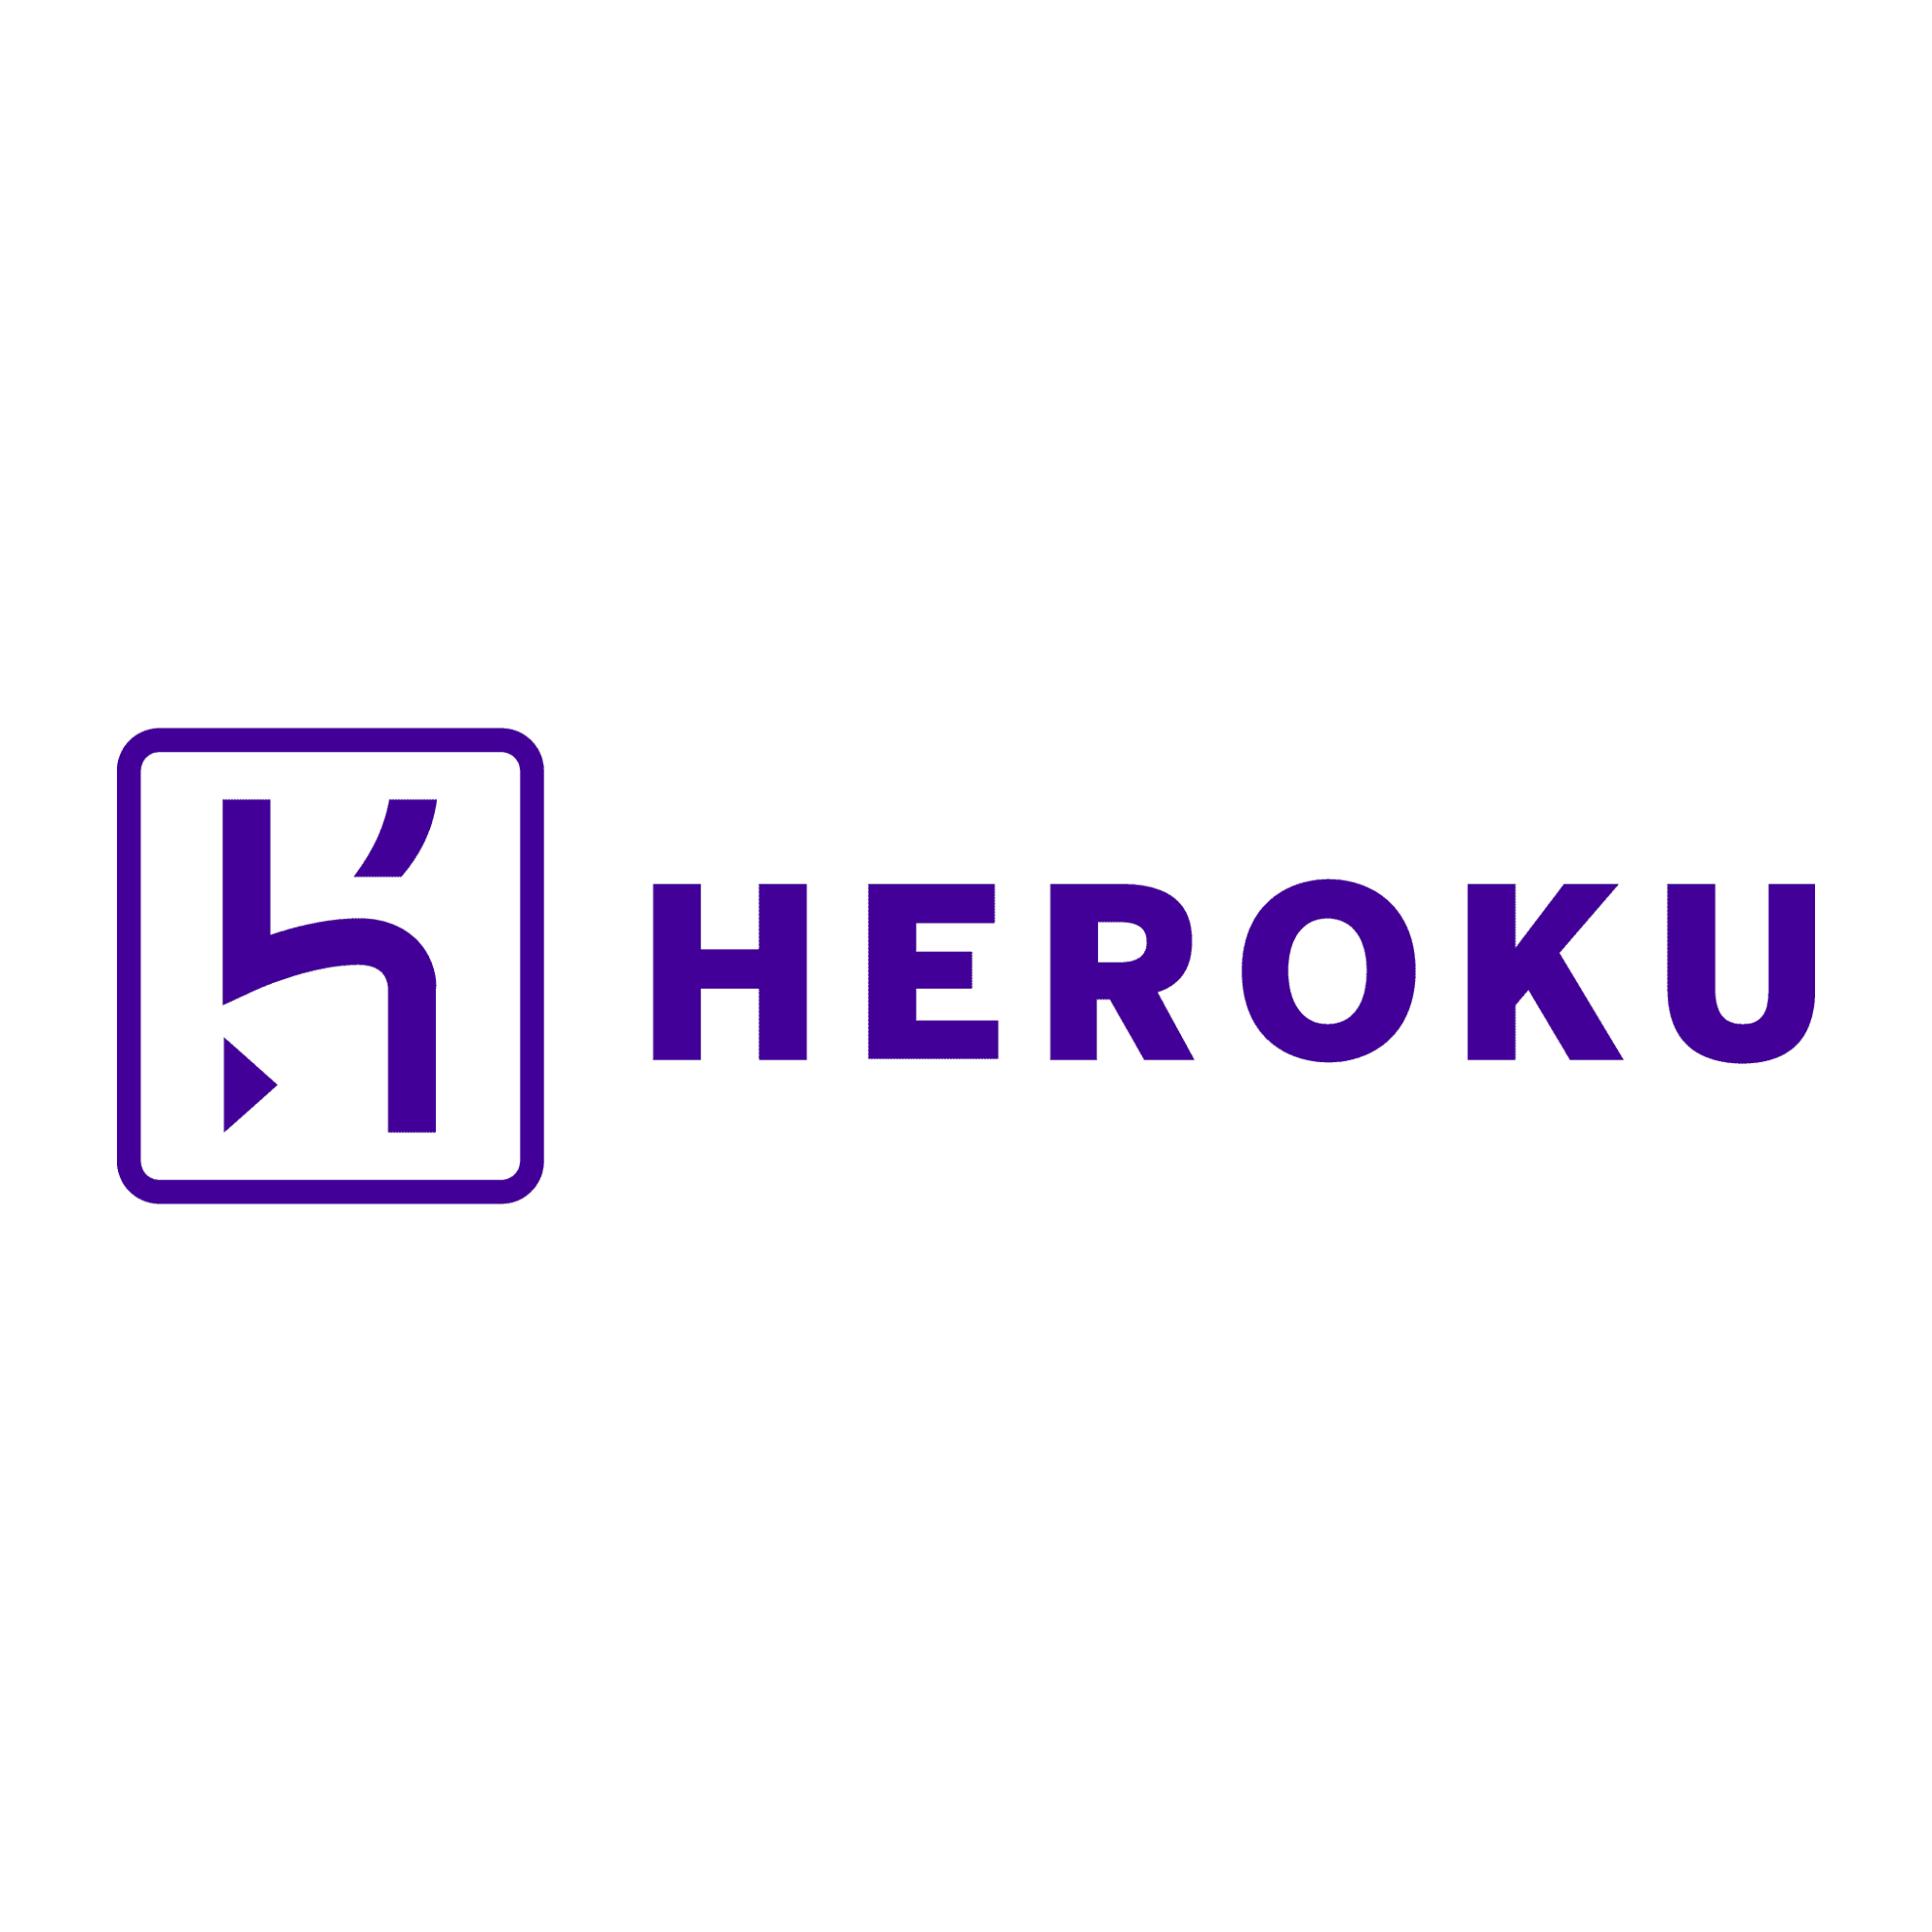 Logo oficial da Heroku. A imagem apresenta o desenho de uma letra “K” estilizada e o nome “Heroku”, ambos em roxo escuro.